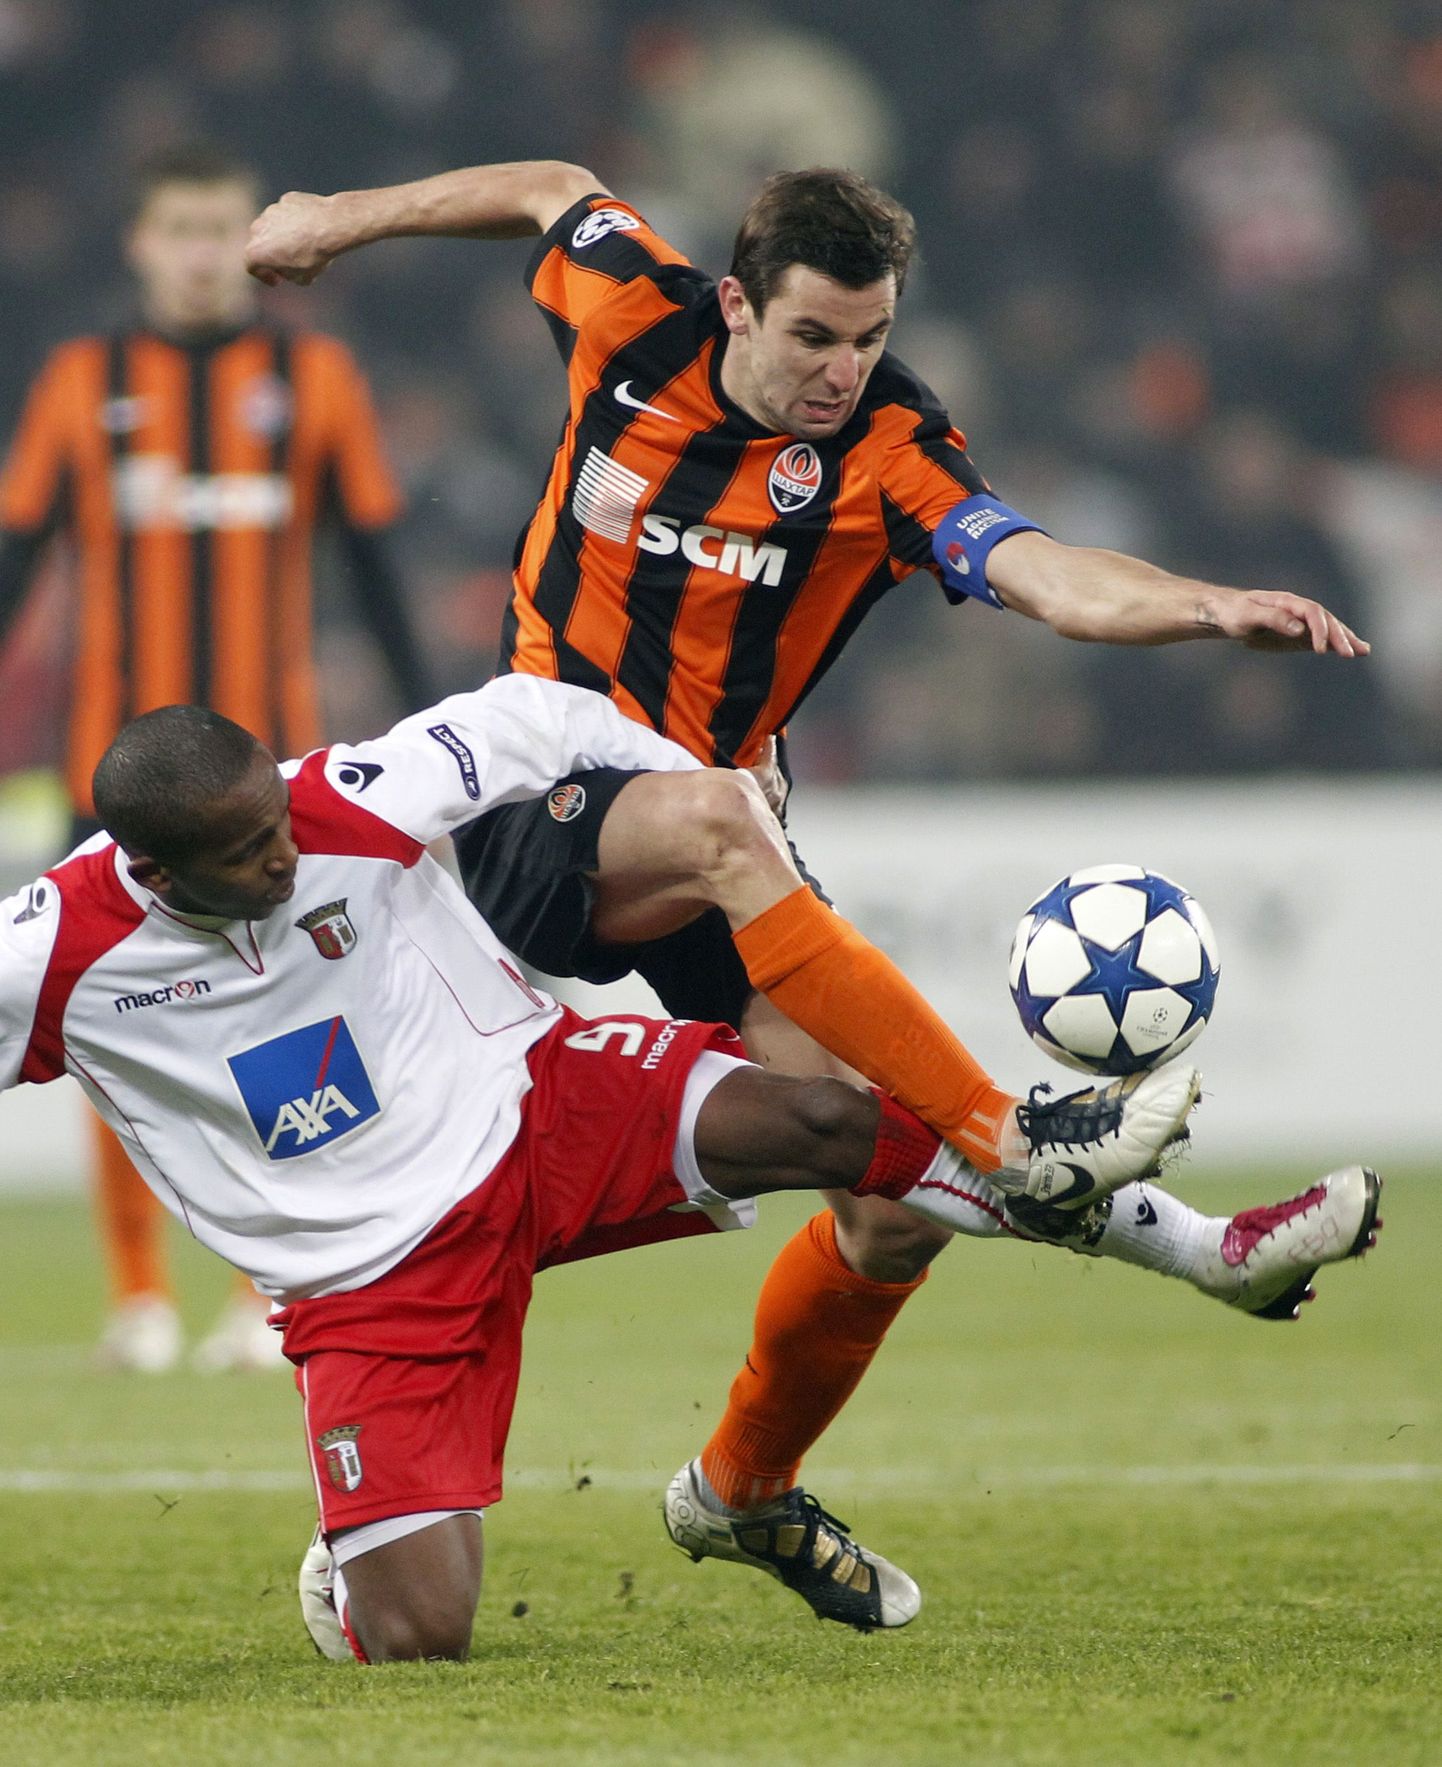 За мяч борется лидер "Шахтера" Дарио Срна (черно-оранжевая футболка).